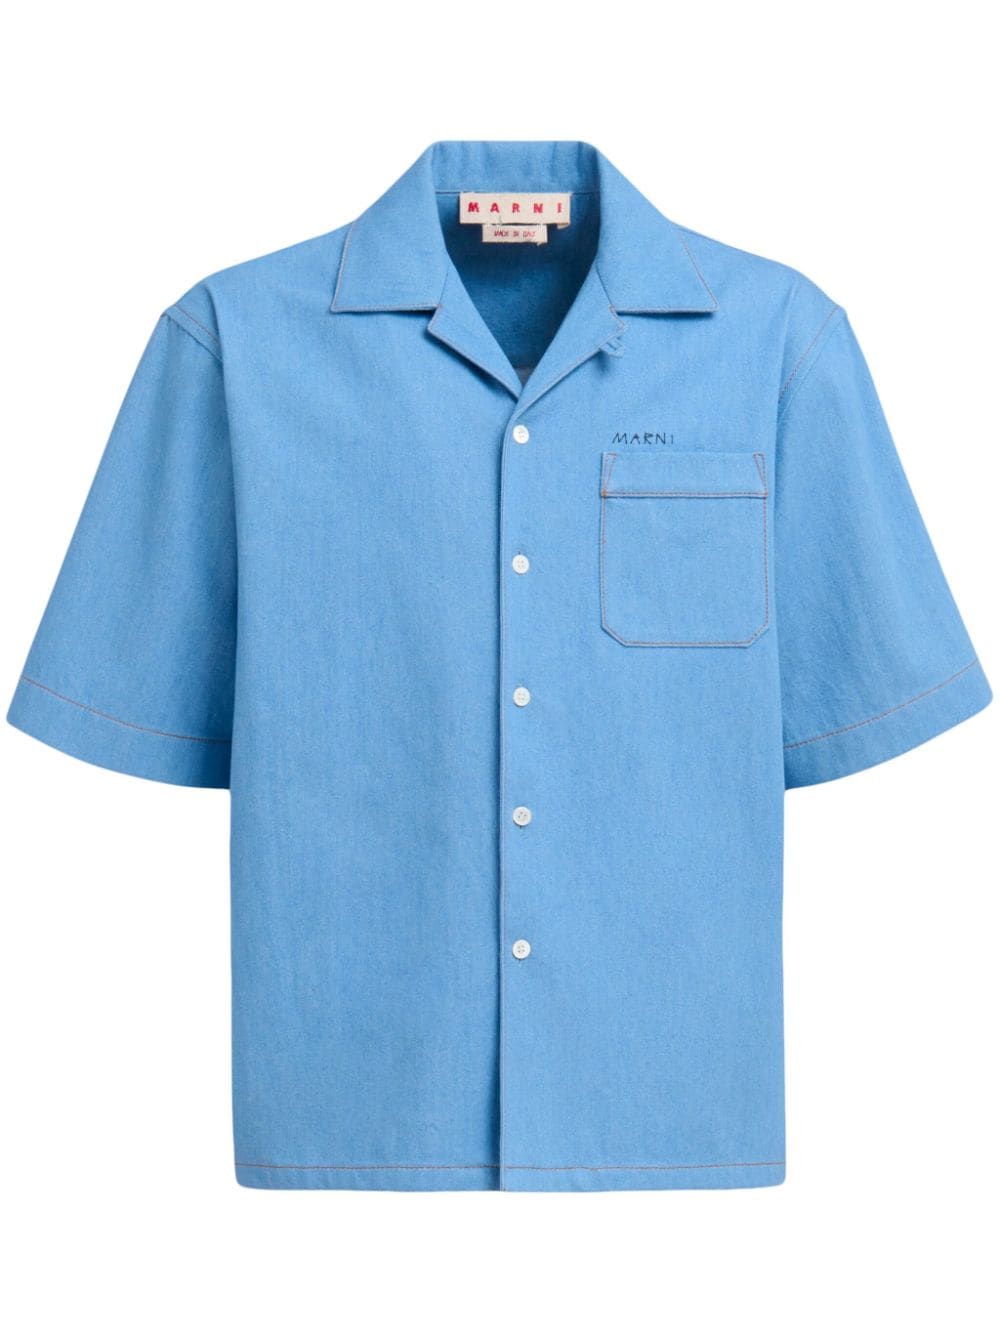 Marni Hemd mit aufgesetzter Tasche - Blau von Marni